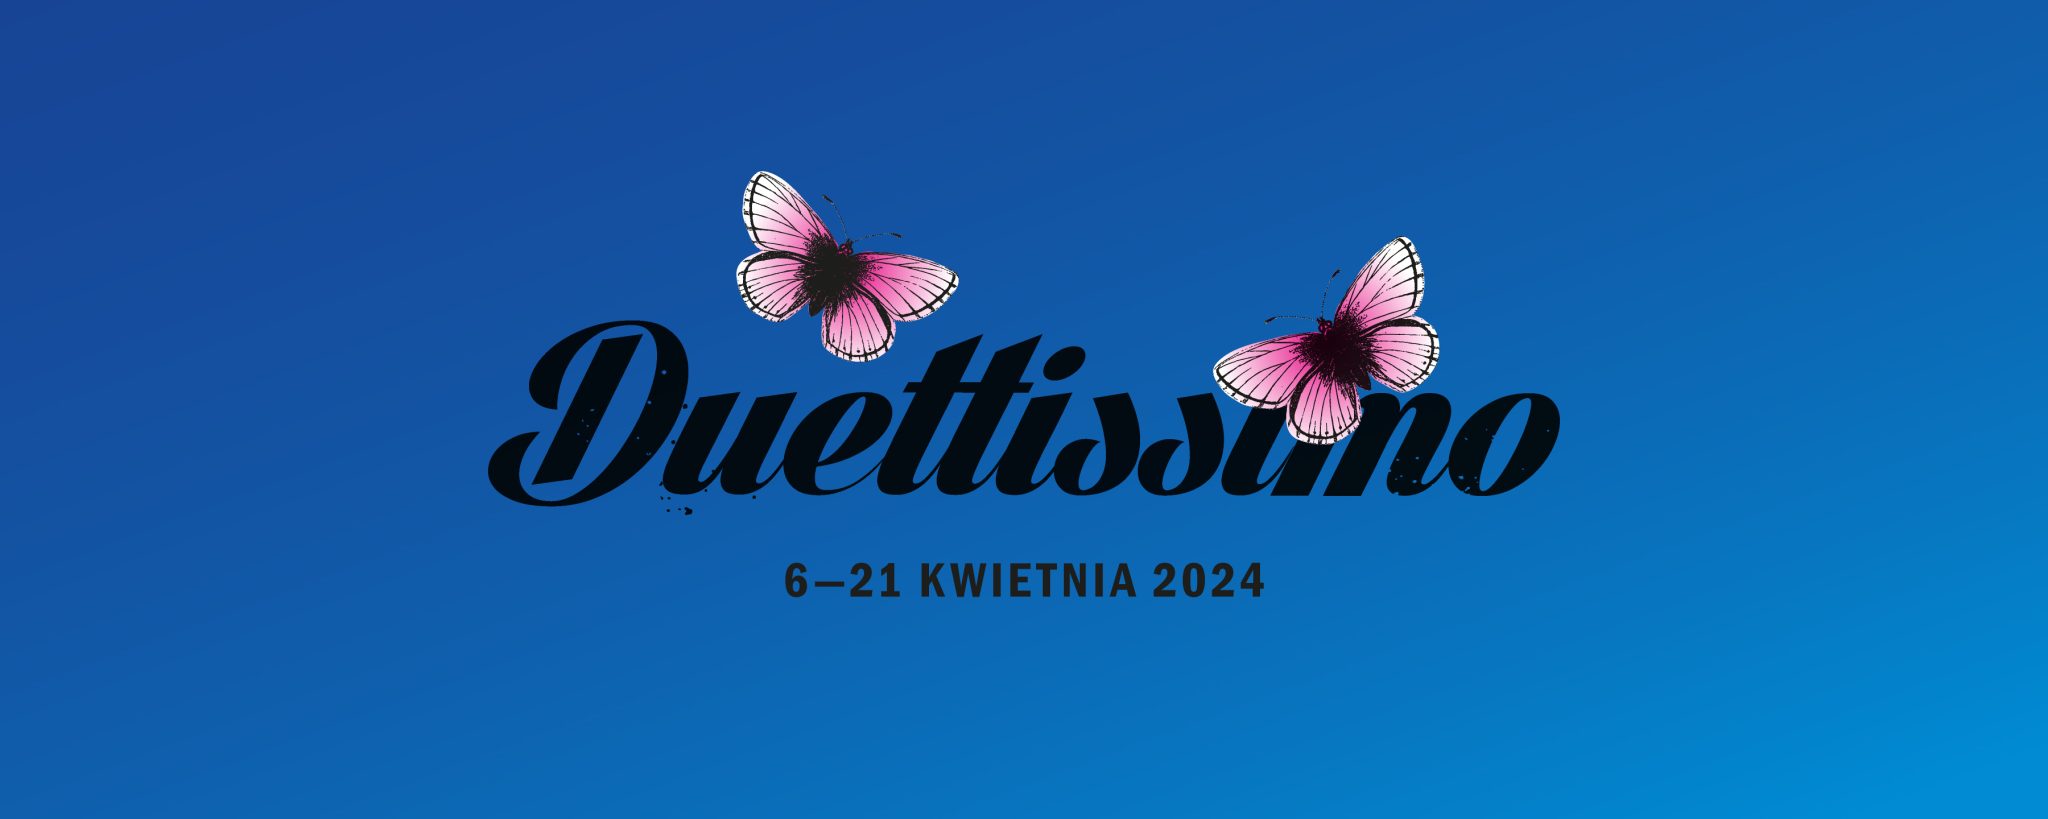 Kliknięcie przenosi na stronę festiwalu "Duettissimo"